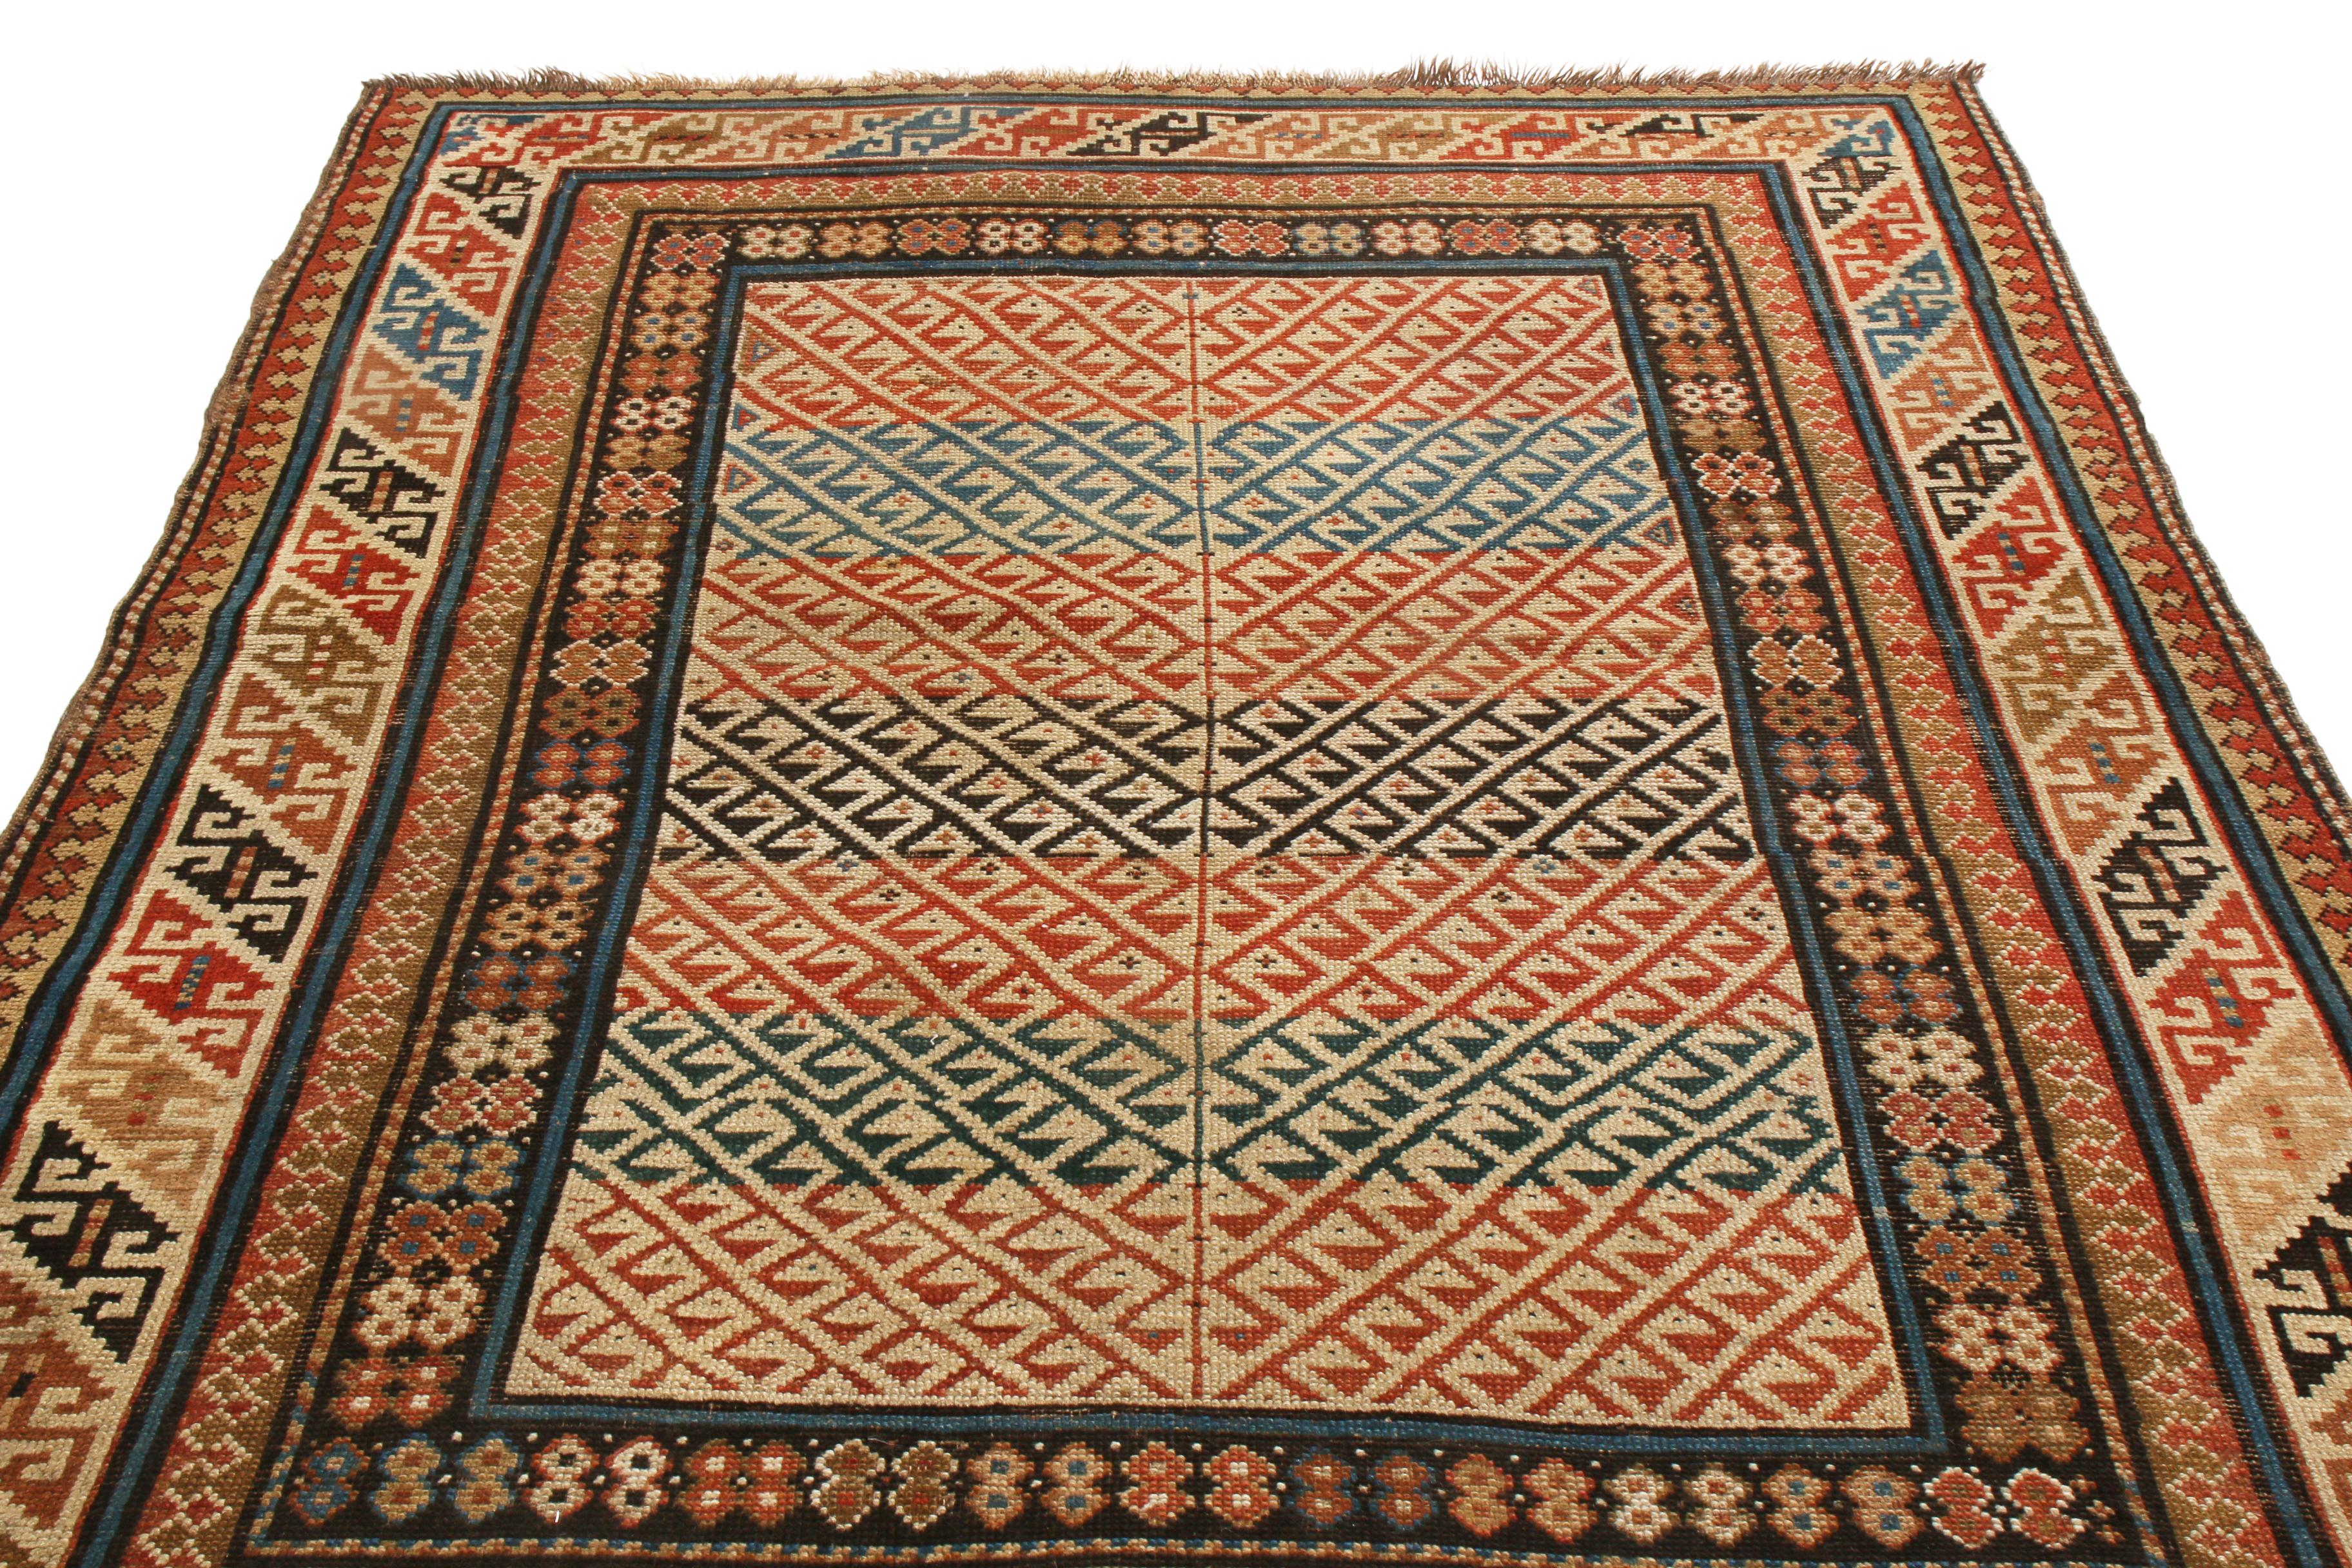 Dieser antike, traditionelle Kuba-Teppich, der zwischen 1880 und 1890 in Russland entstand, zeichnet sich durch eine einzigartige Interpretation der verschiedenen orientalischen Symbole aus. Das aus hochwertiger Wolle handgeknüpfte Feldmuster zeigt